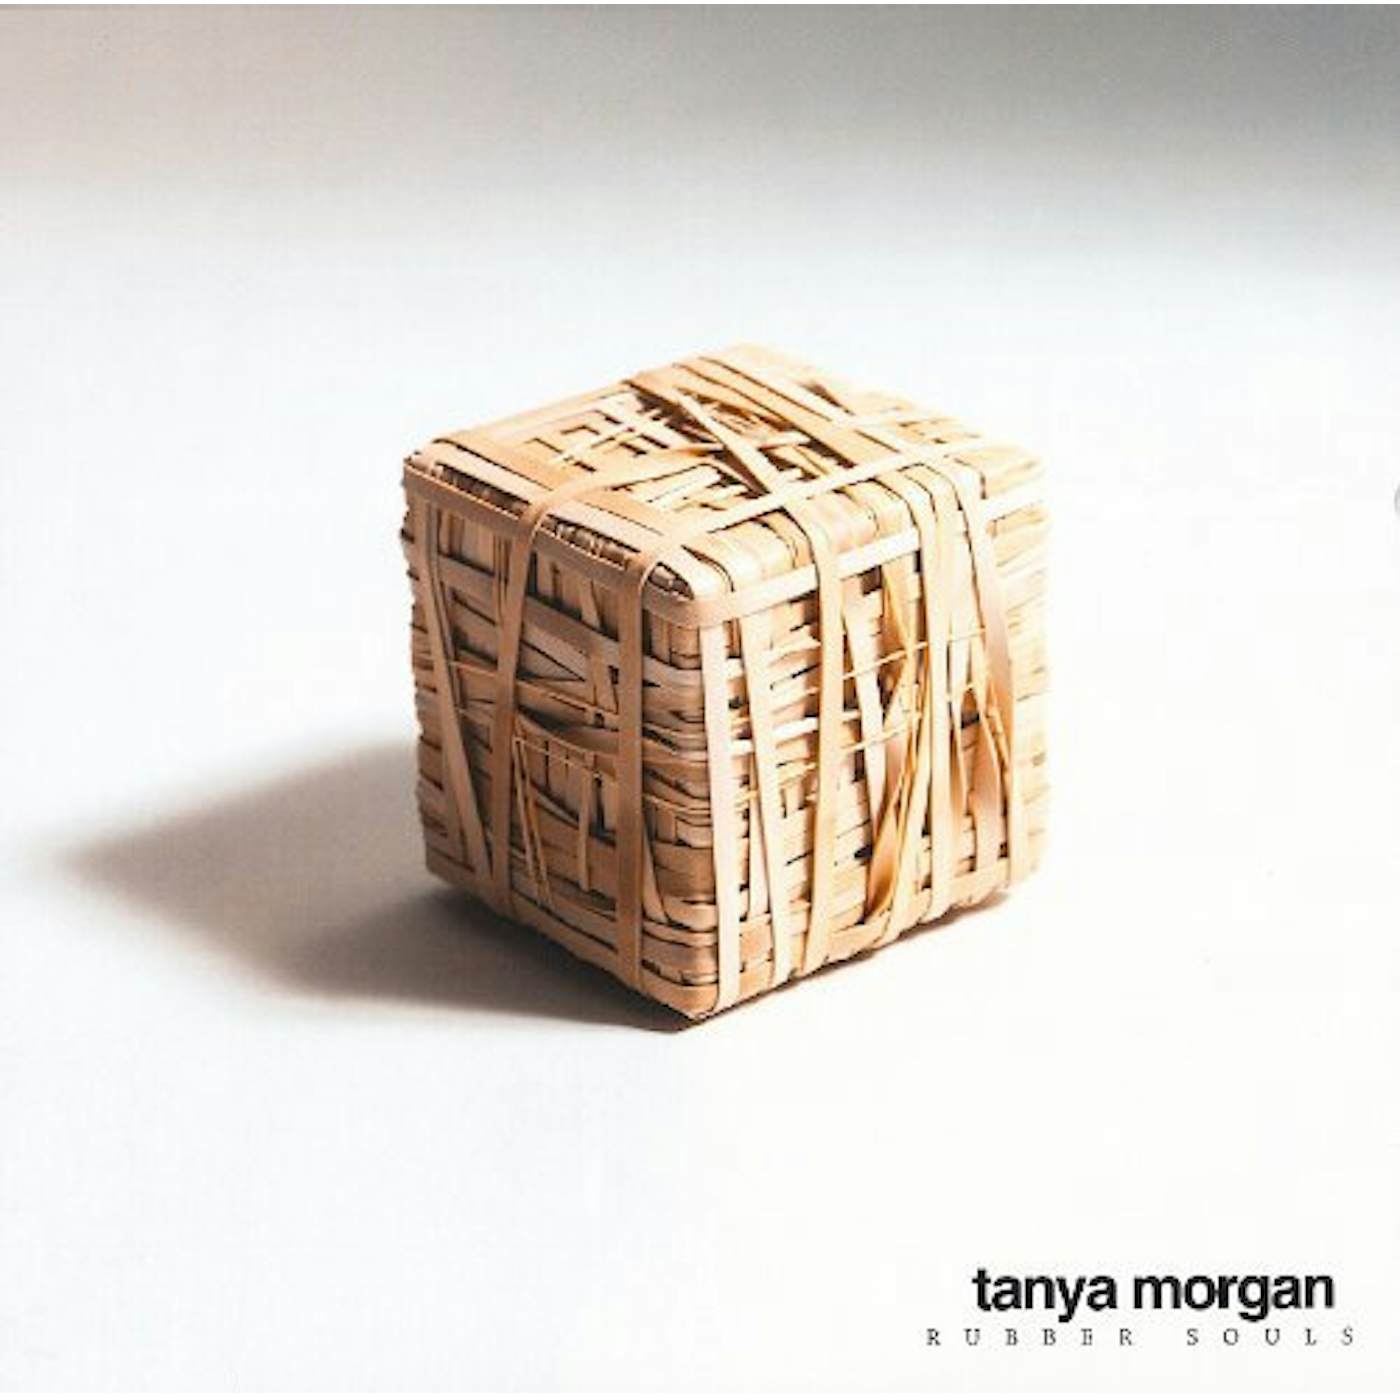 Tanya Morgan Rubber Souls Vinyl Record